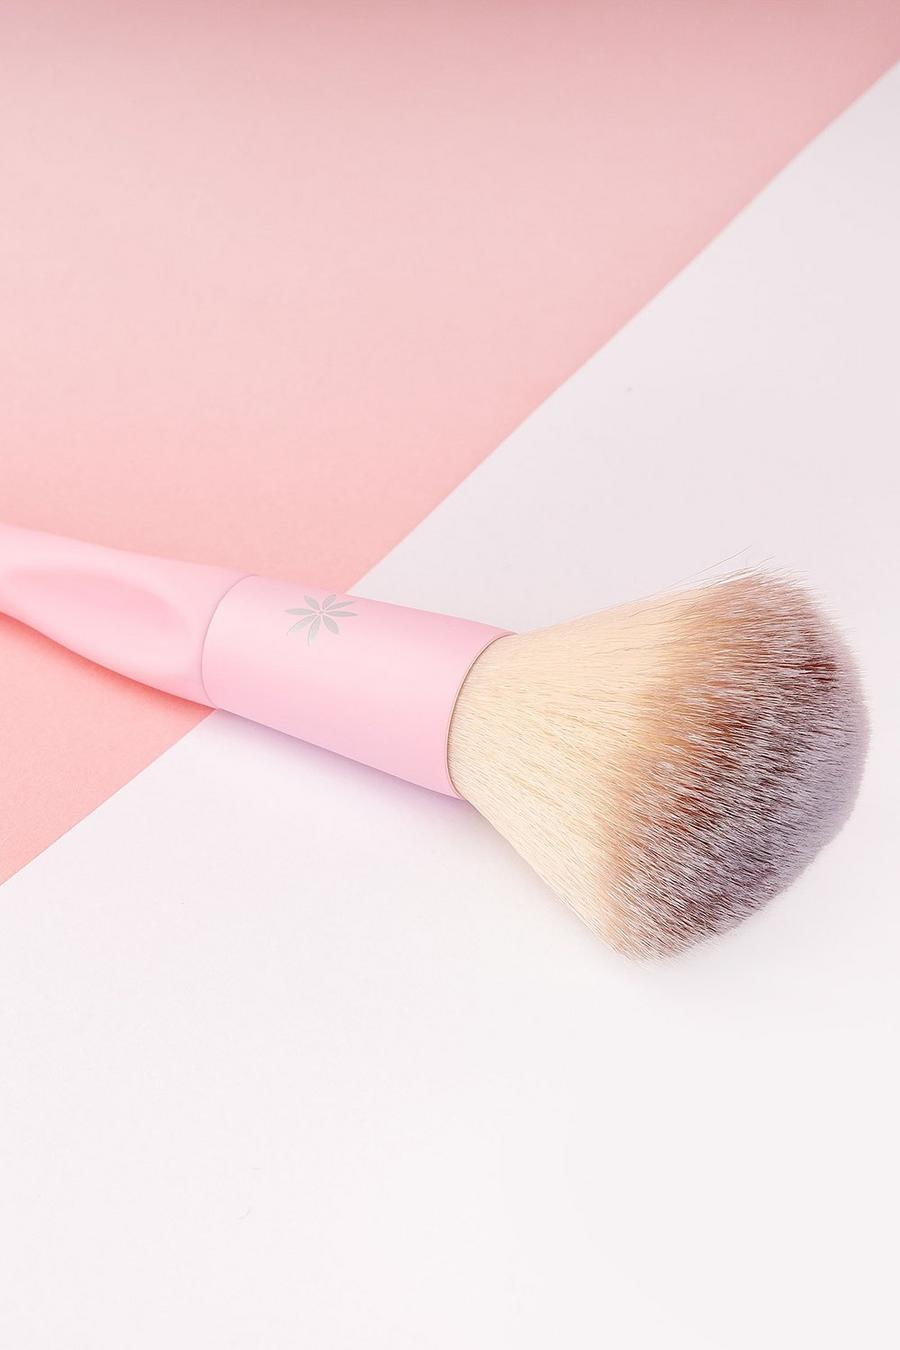 Baby pink Brushworks Hd Blush Brush